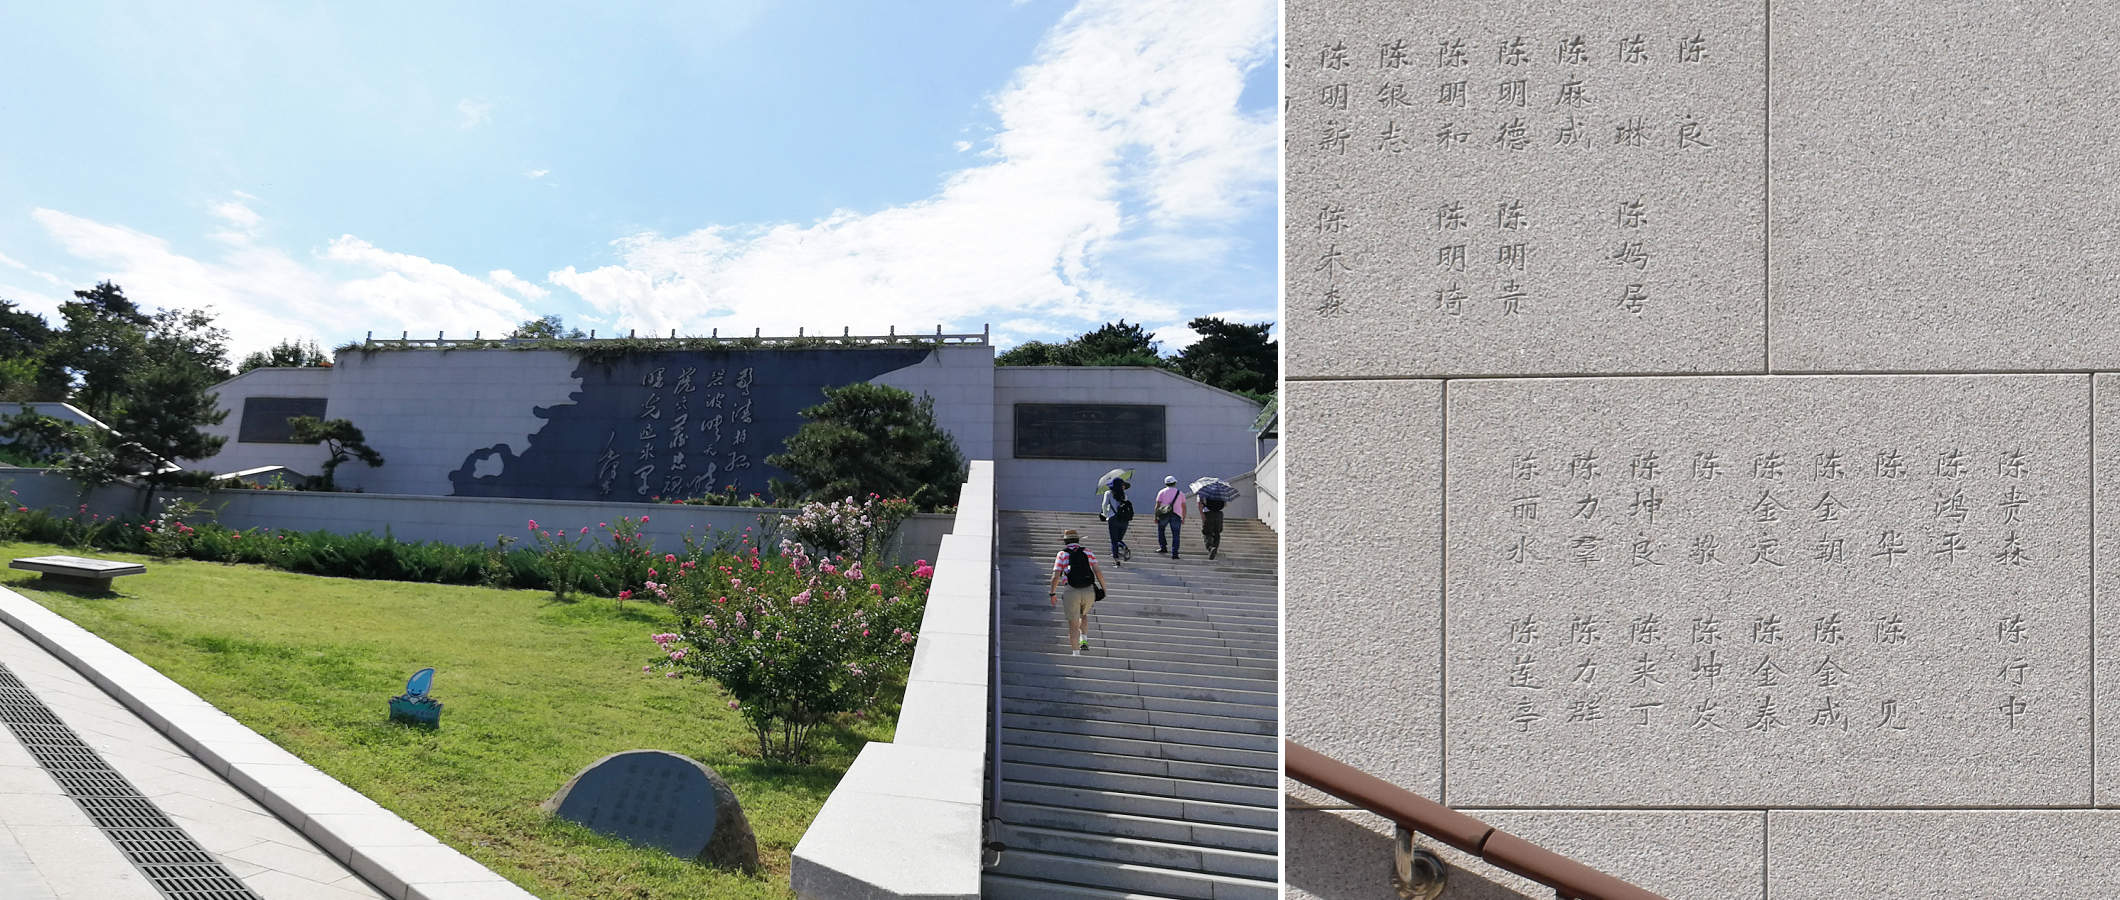 北京西山無名英雄紀念廣場，從入口沿階梯拾級而上，可看到側壁鐫刻了許多姓名。